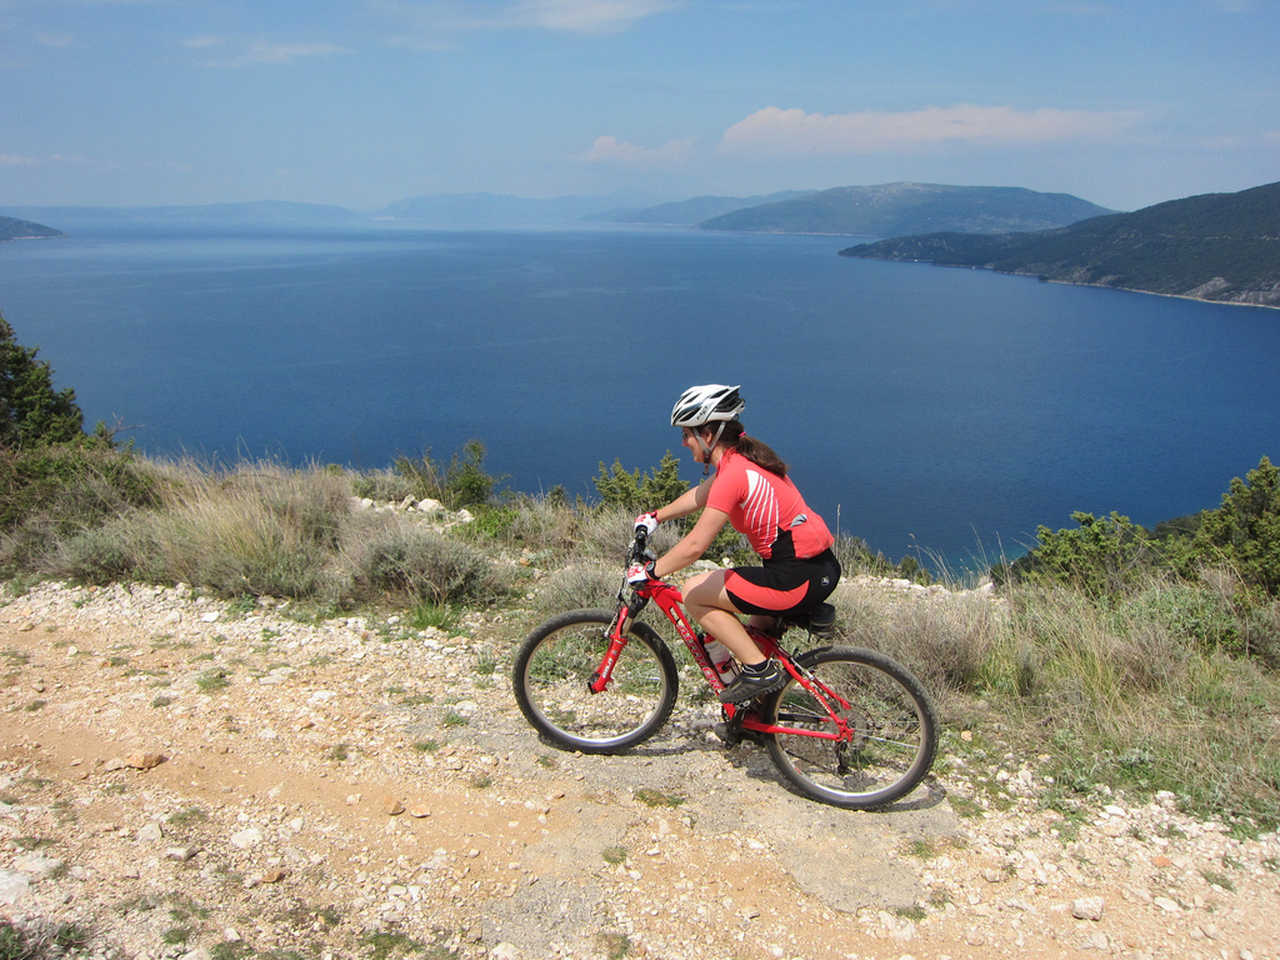 Randonnée à vélo sur les bords de la mer Adriatique en Croatie